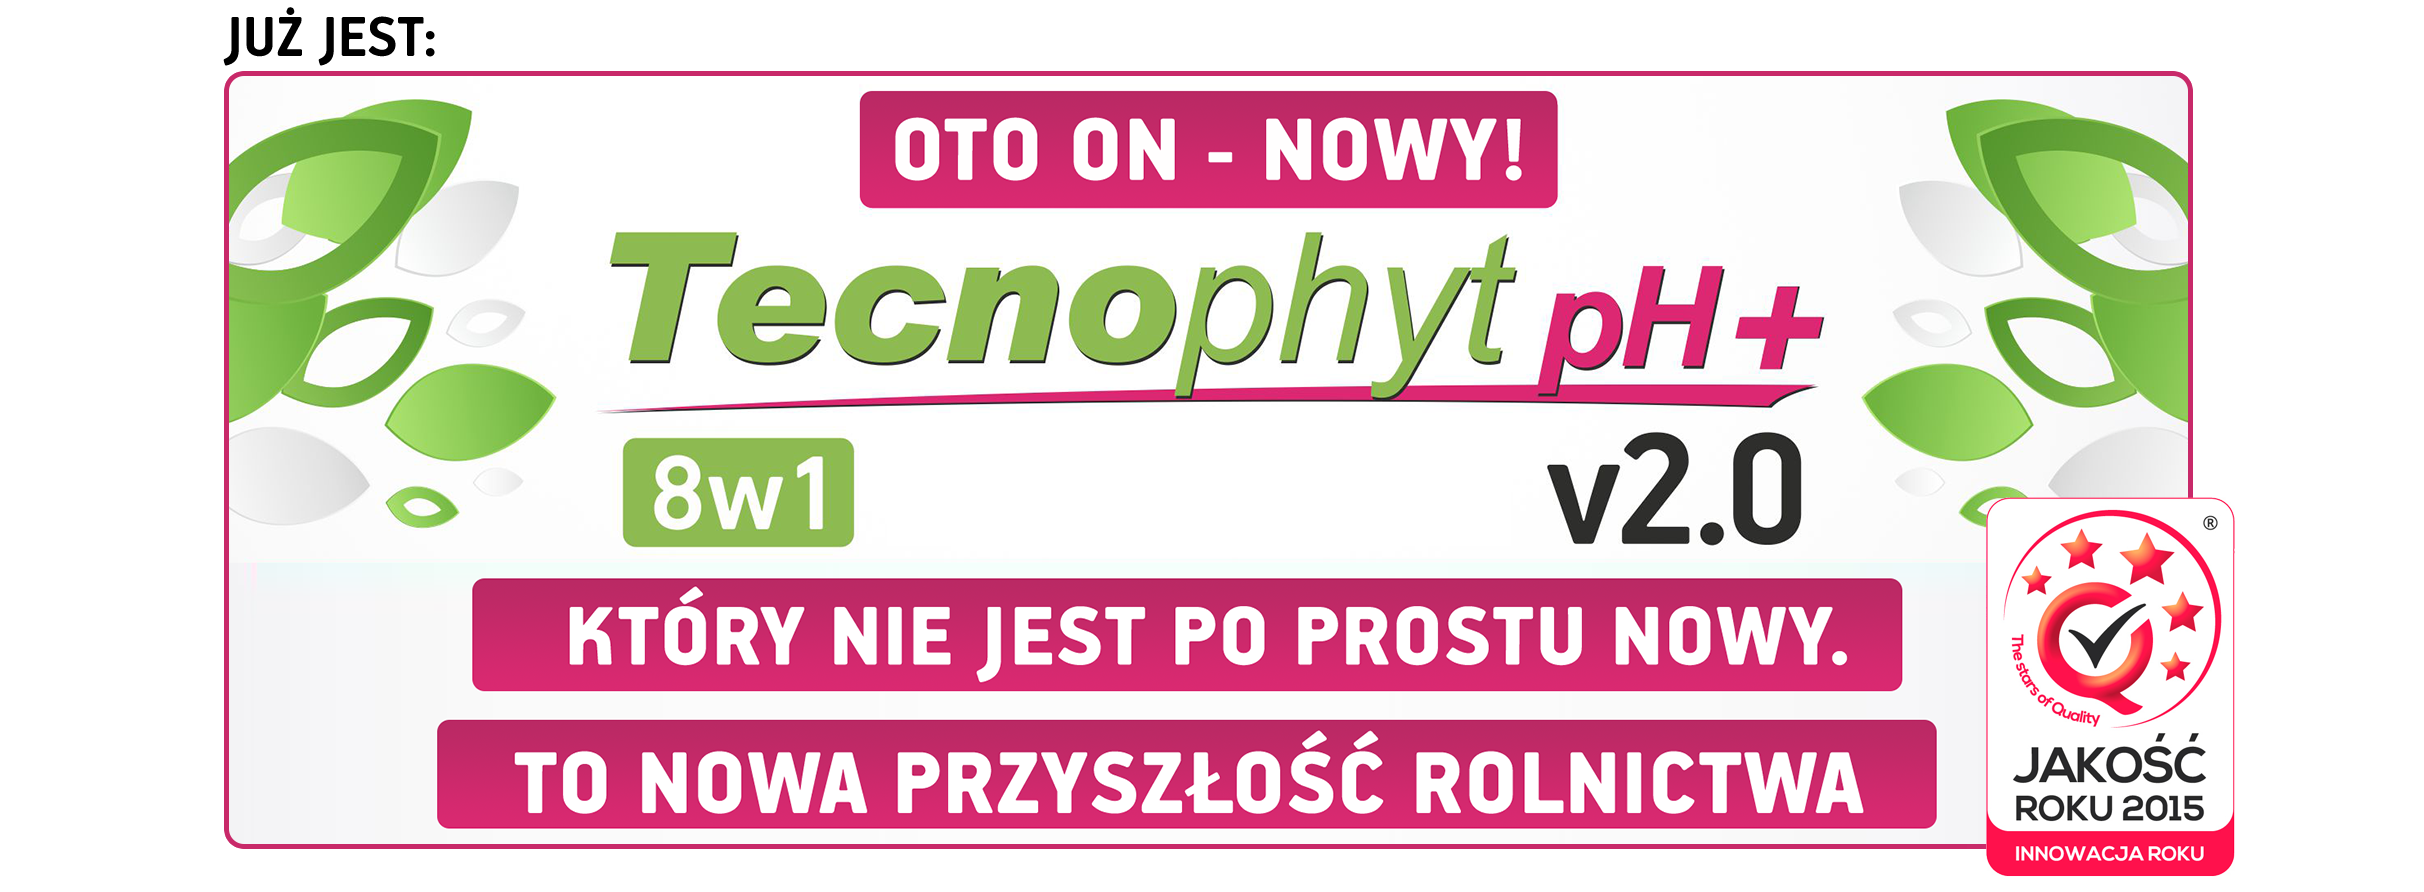 Tecnophyt Ph+ v2.0 8w1